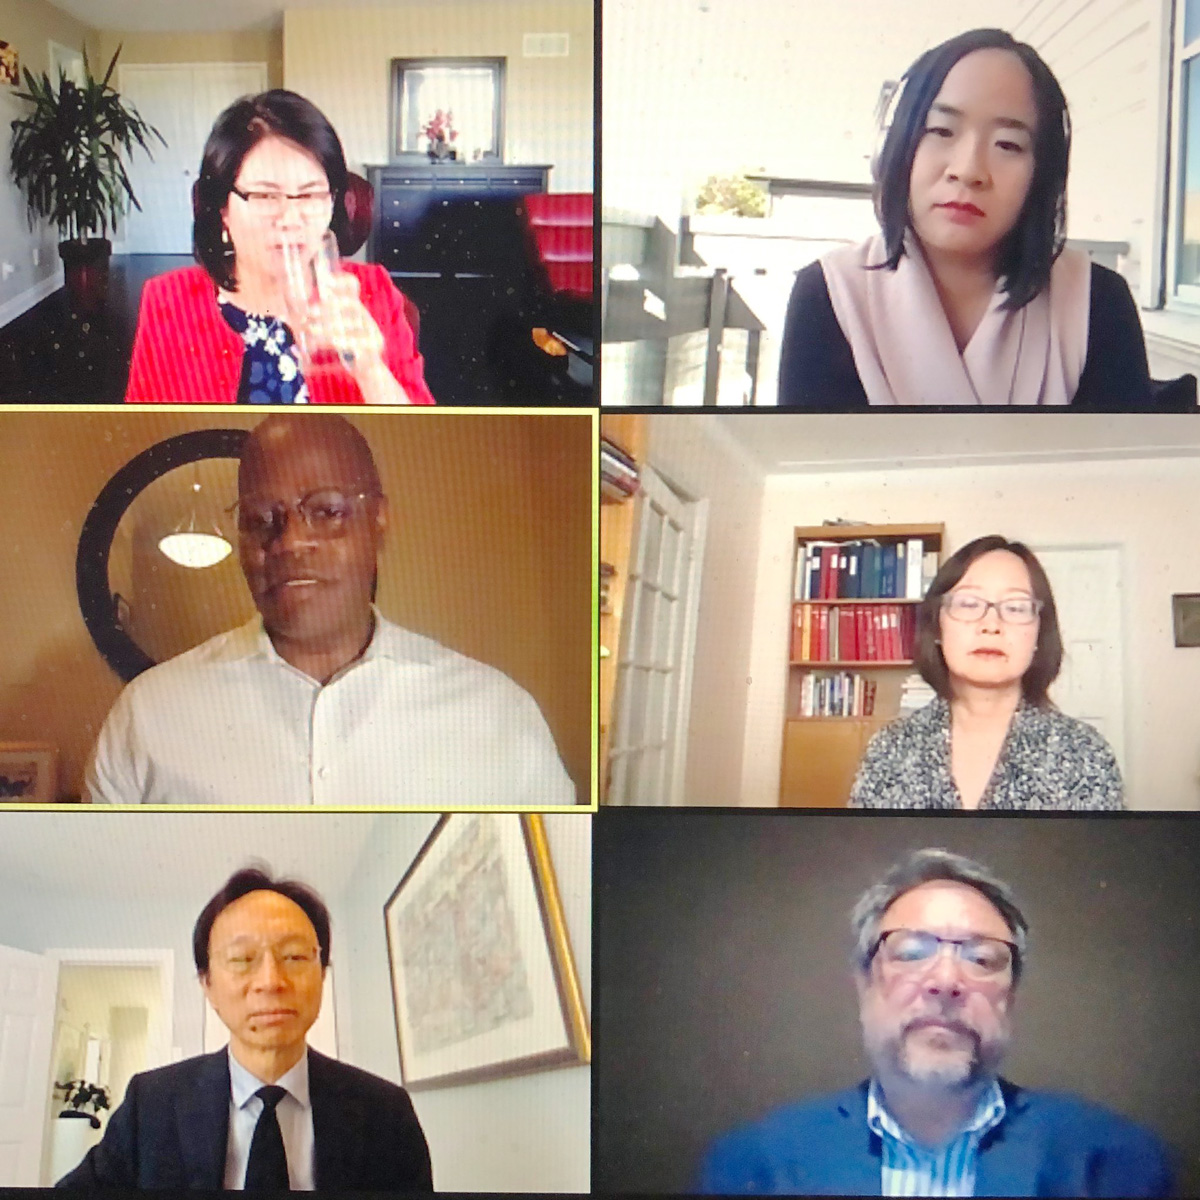 Le jeudi 13 mai 2021 – Le sénateur Yuen Pau Woo participe à une table ronde sur la lutte contre le racisme anti-asiatique au Canada, organisée par la Norman Paterson School of International Affairs de l’Université Carleton.